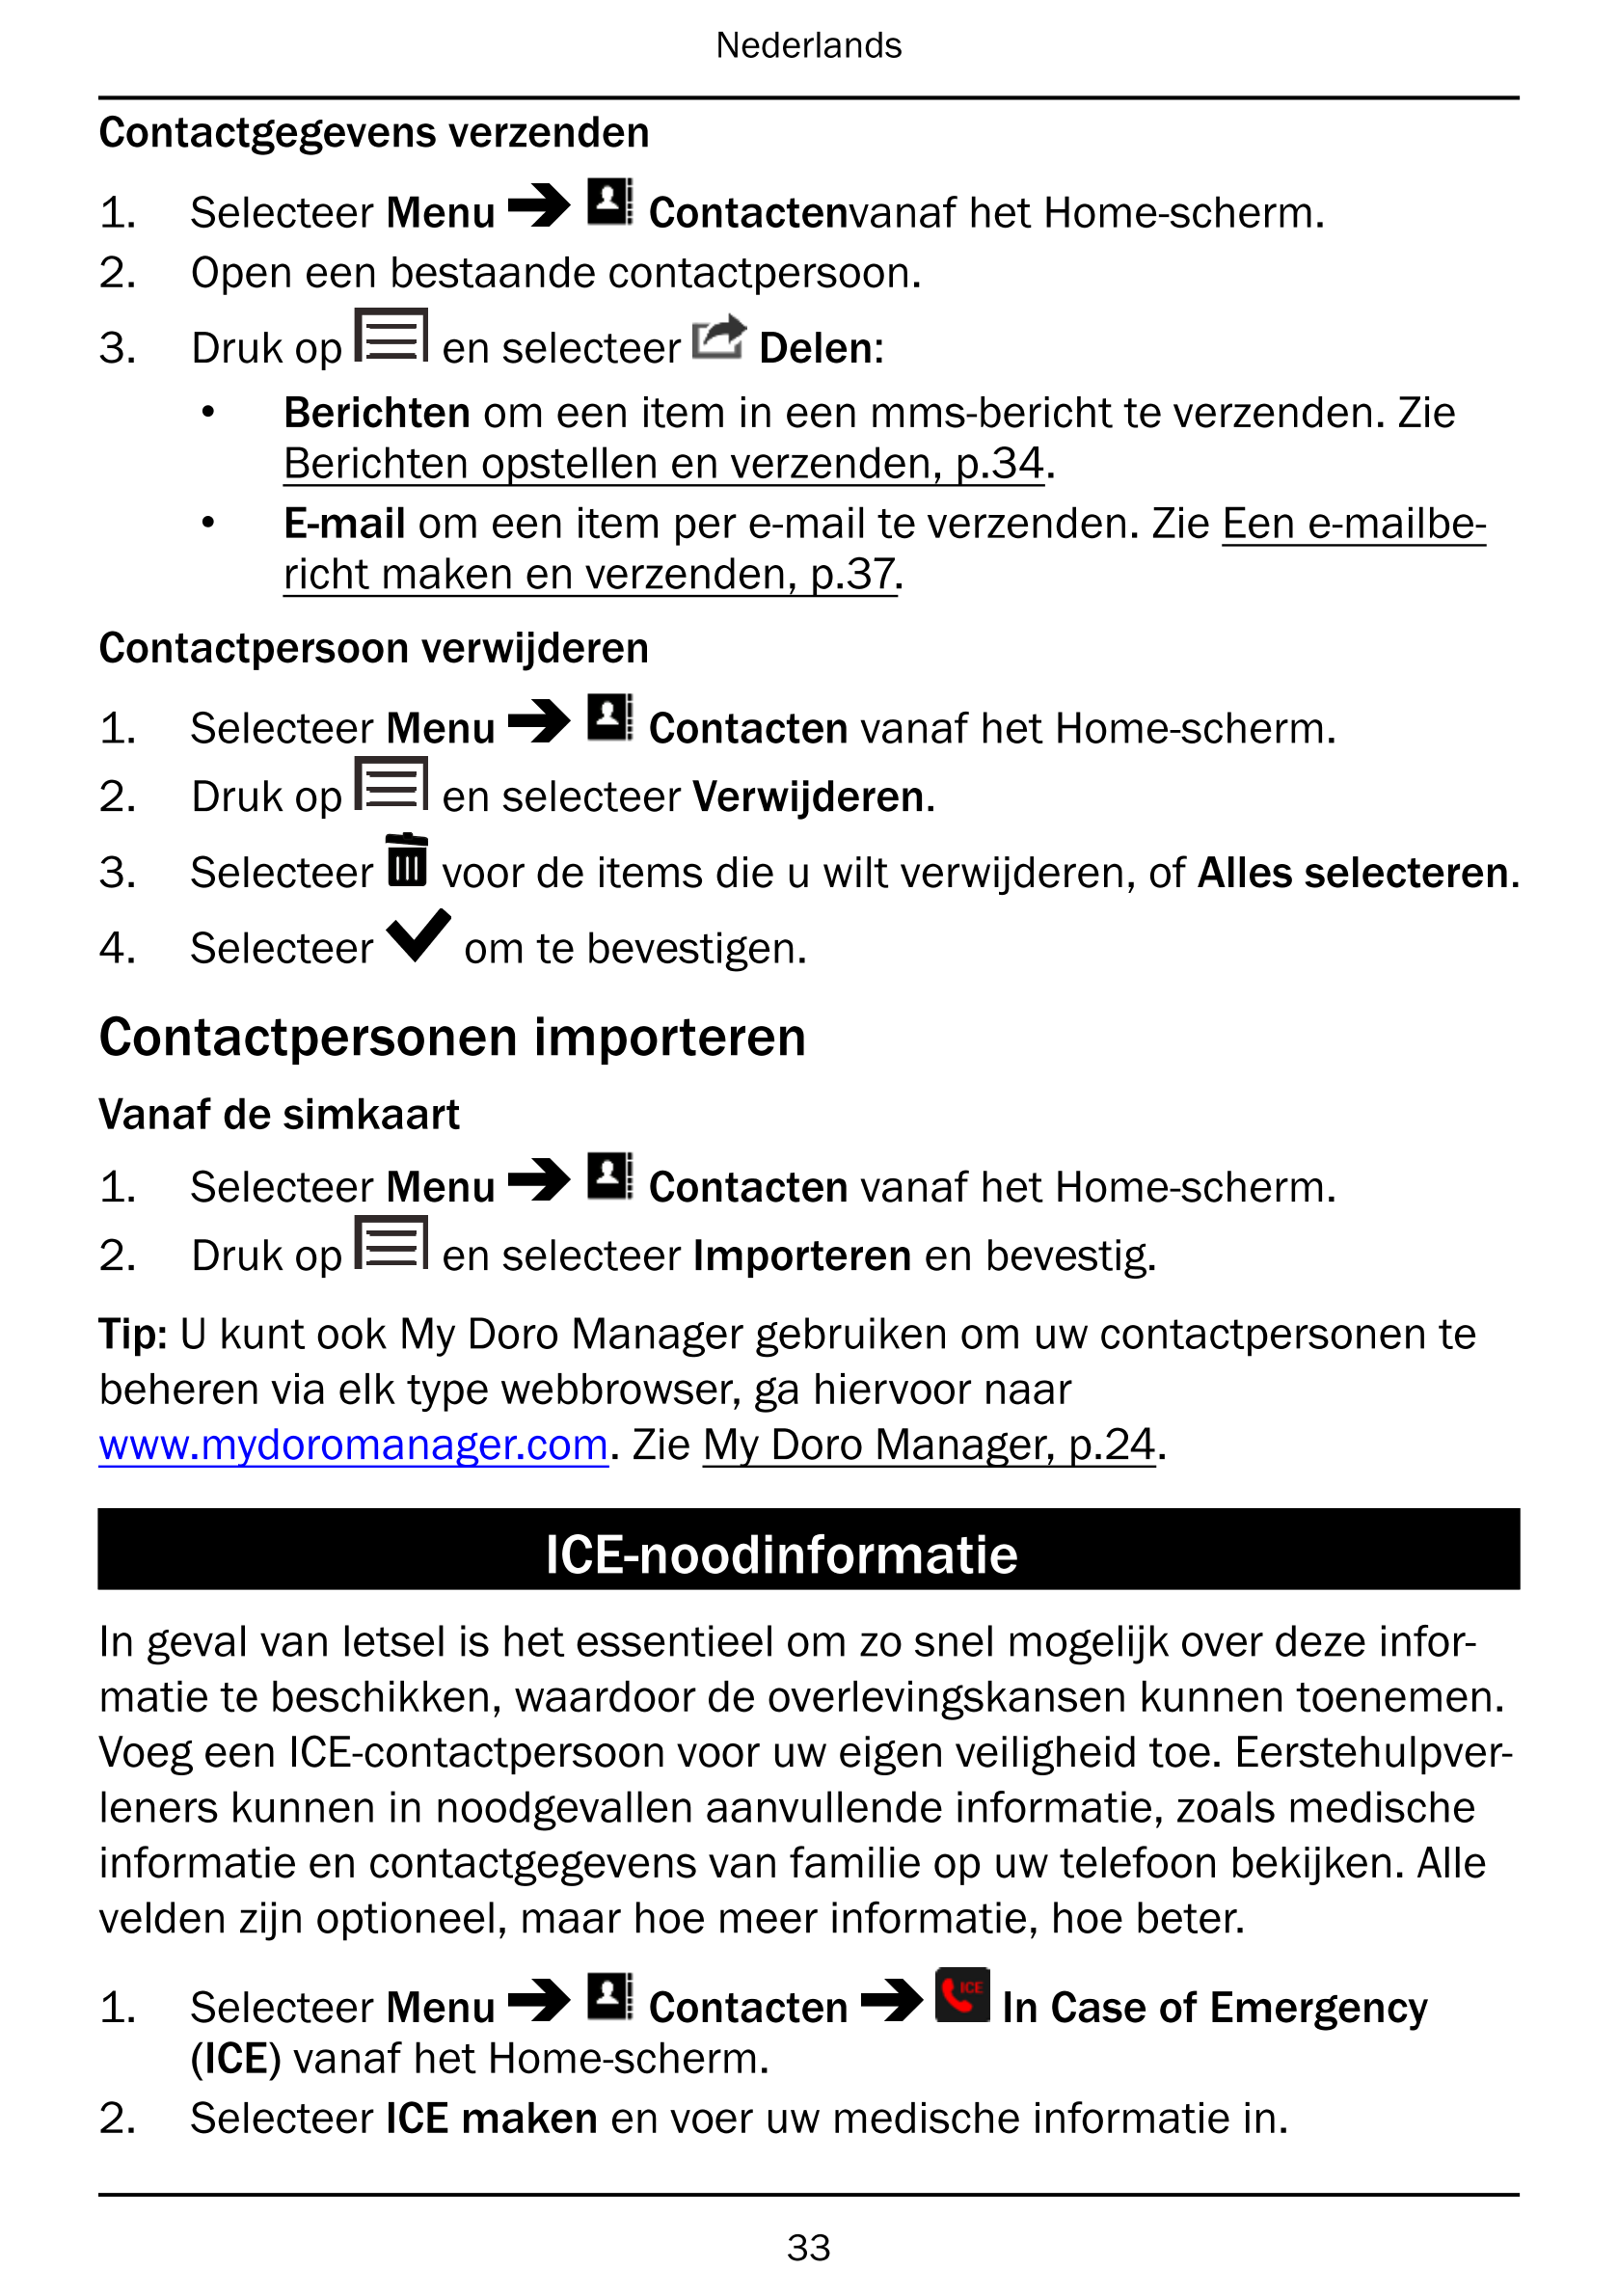 Nederlands
Contactgegevens verzenden
1.     Selecteer Menu Contactenvanaf het Home-scherm.
2.     Open een bestaande contactpers